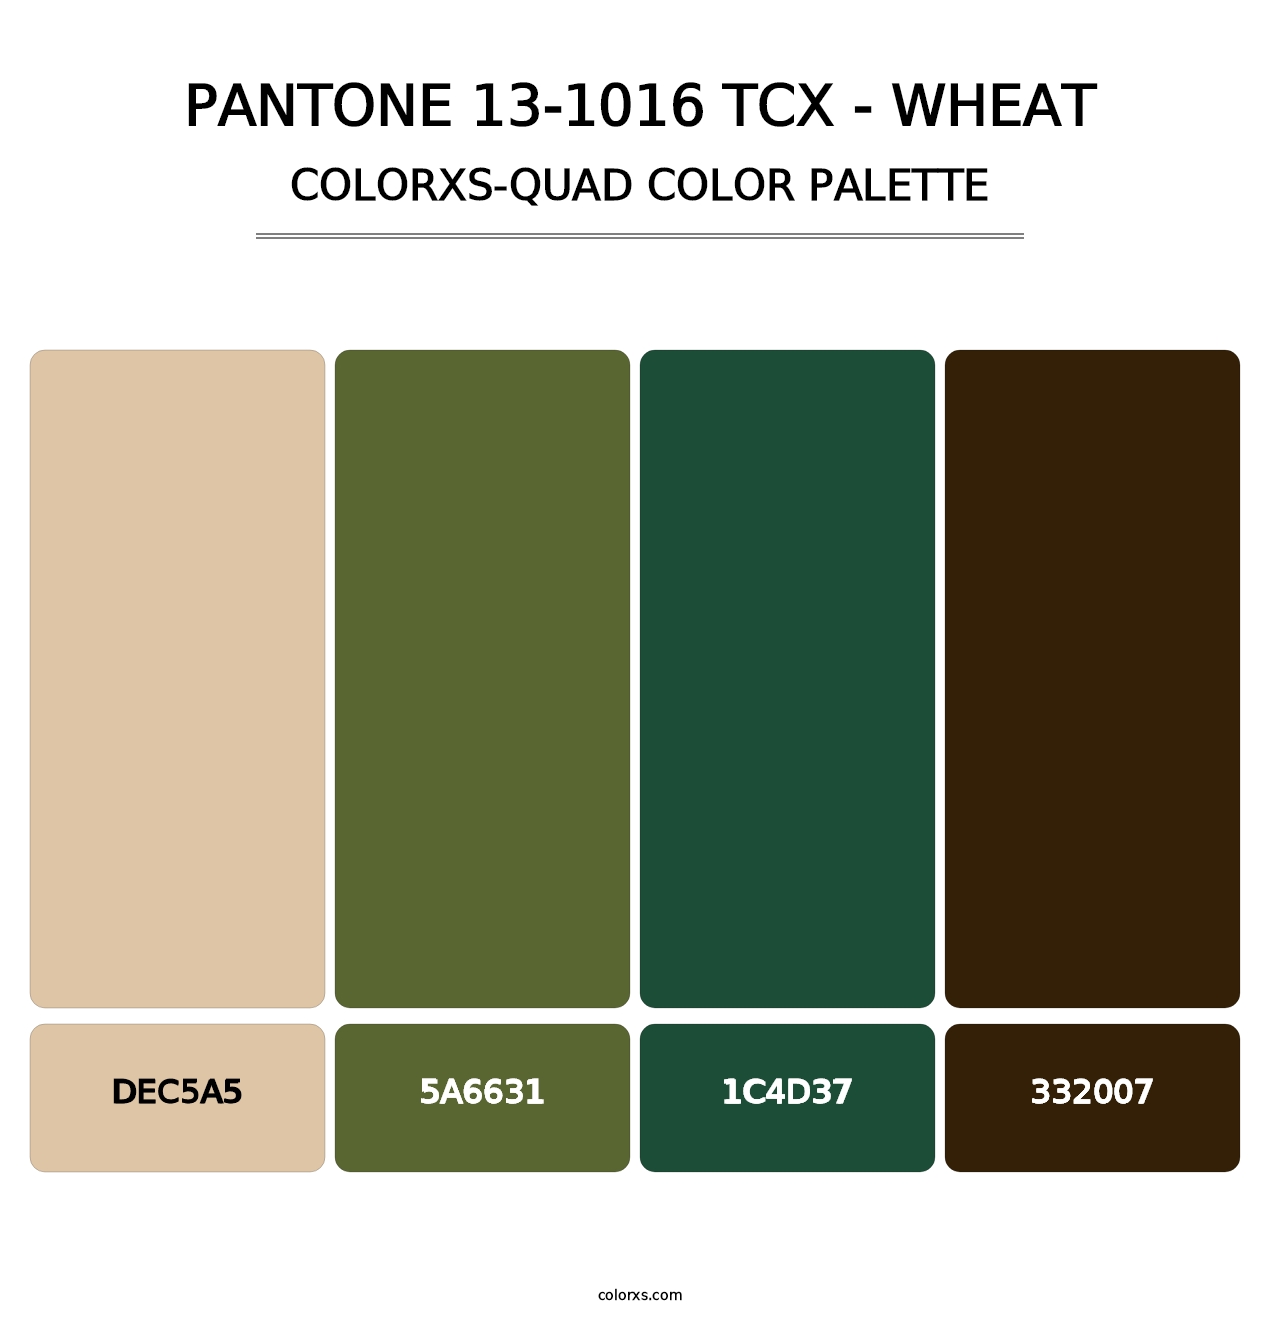 PANTONE 13-1016 TCX - Wheat - Colorxs Quad Palette